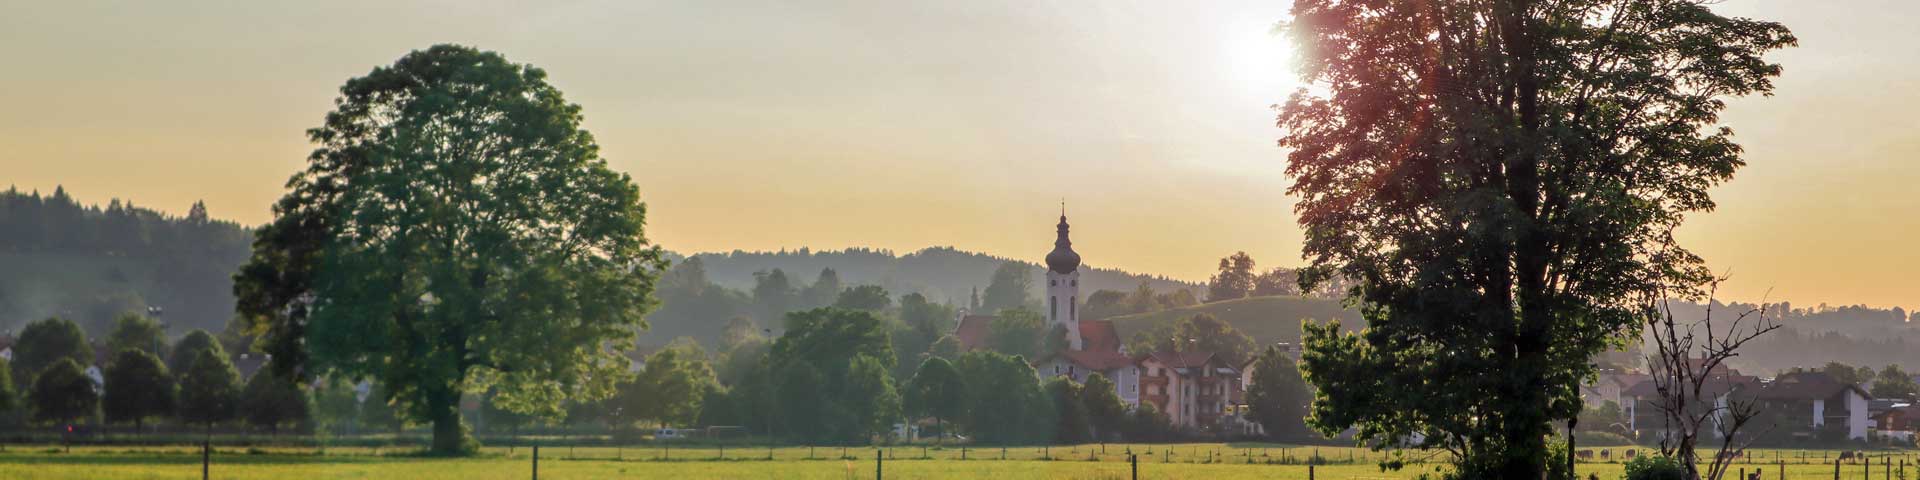 Deko Bild - Blick auf die Kirche St. Anton